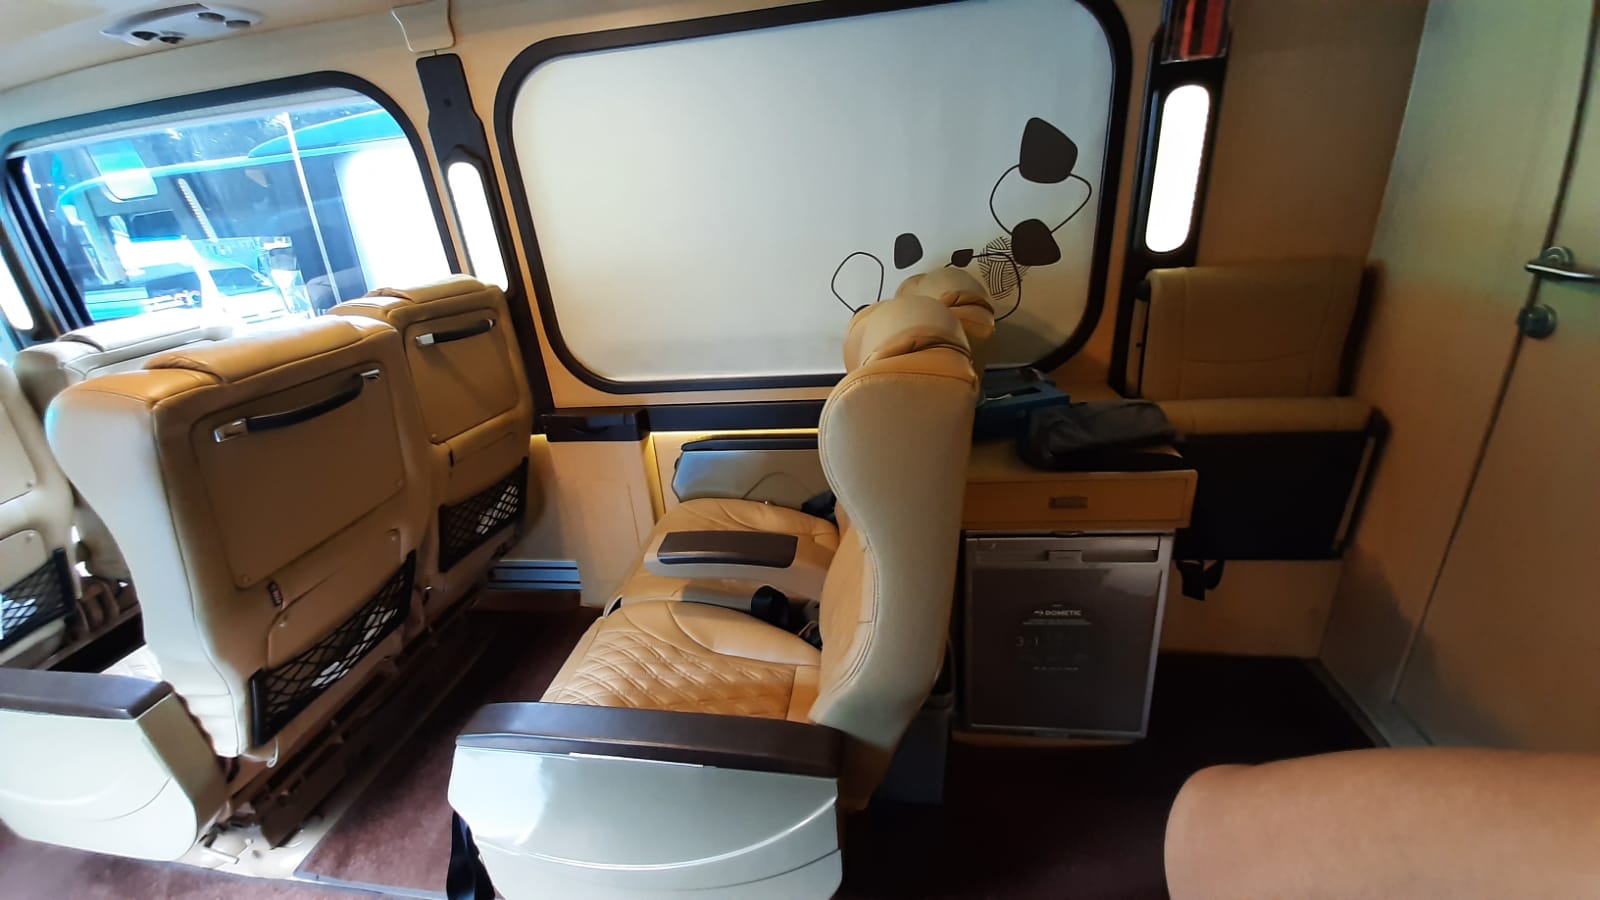 sewa bus luxury Jakarta